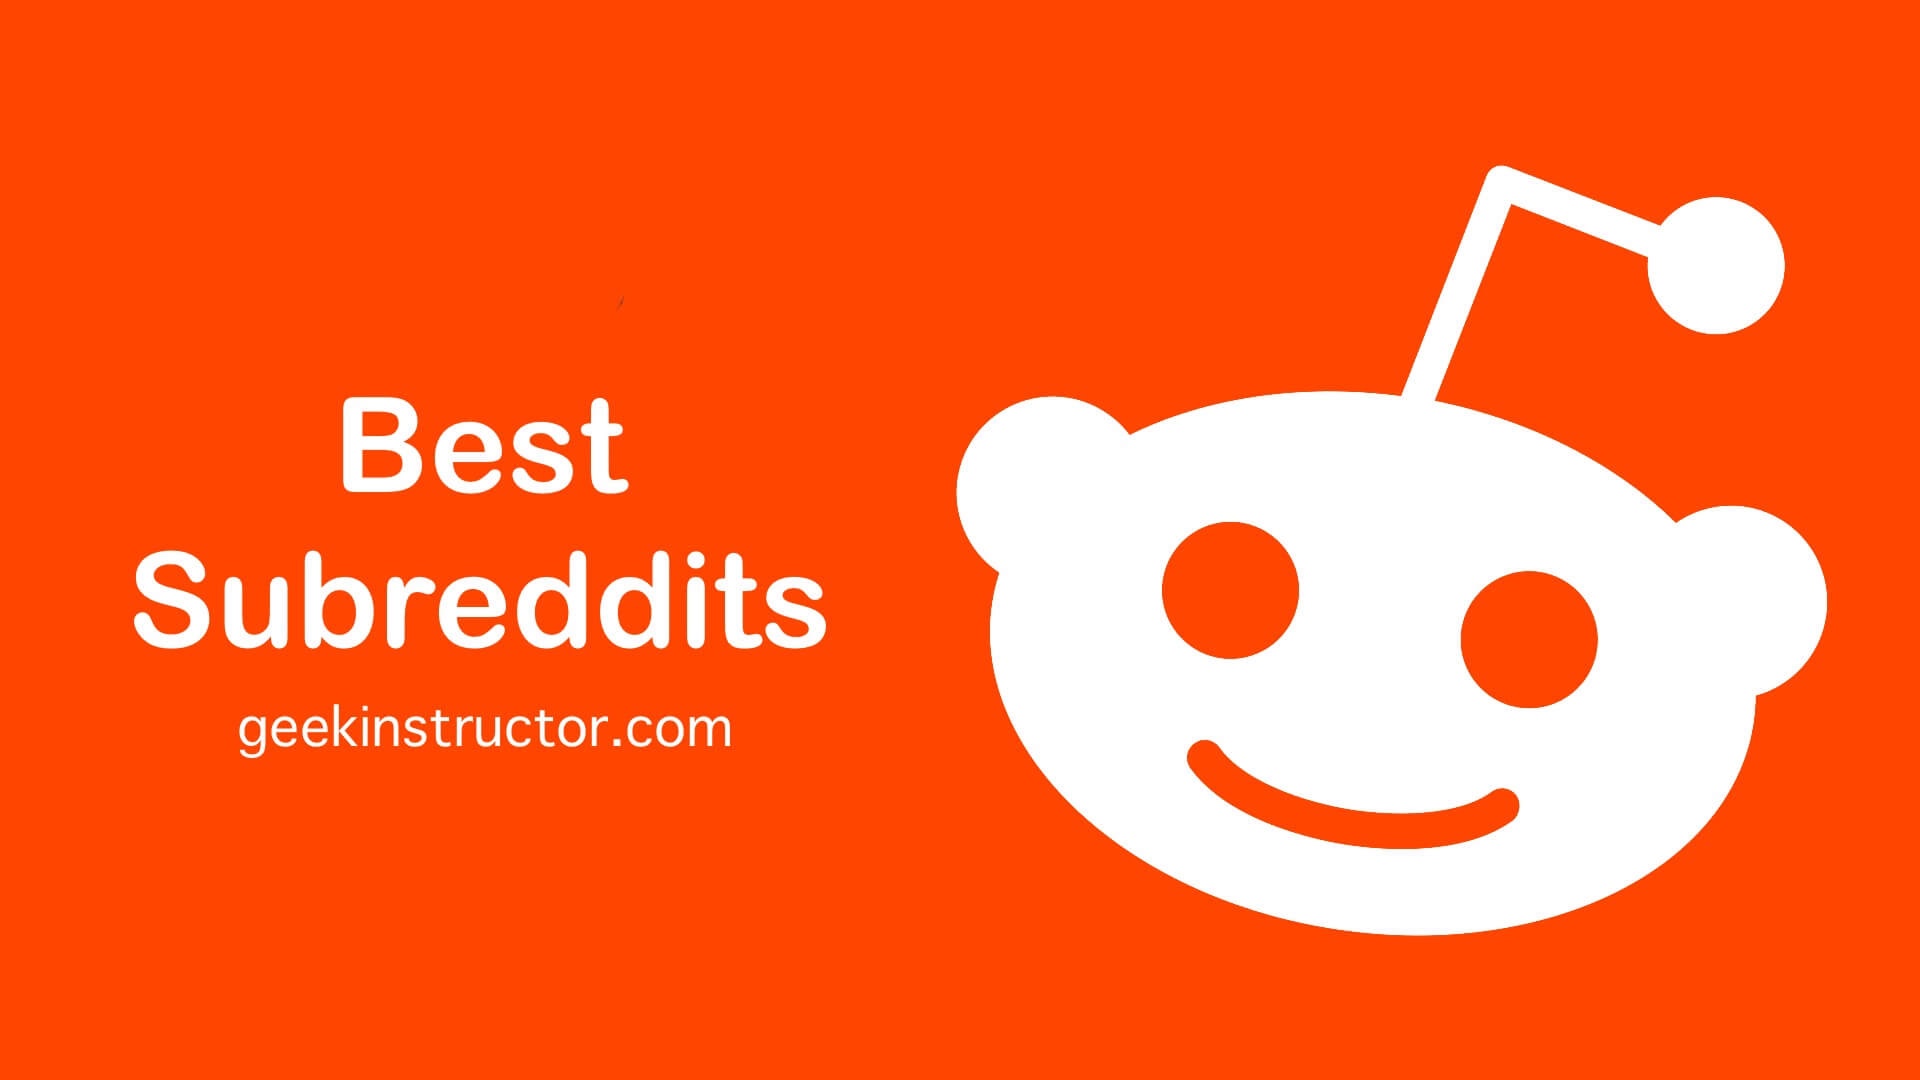 25 Best Subreddits You Should Join on Reddit